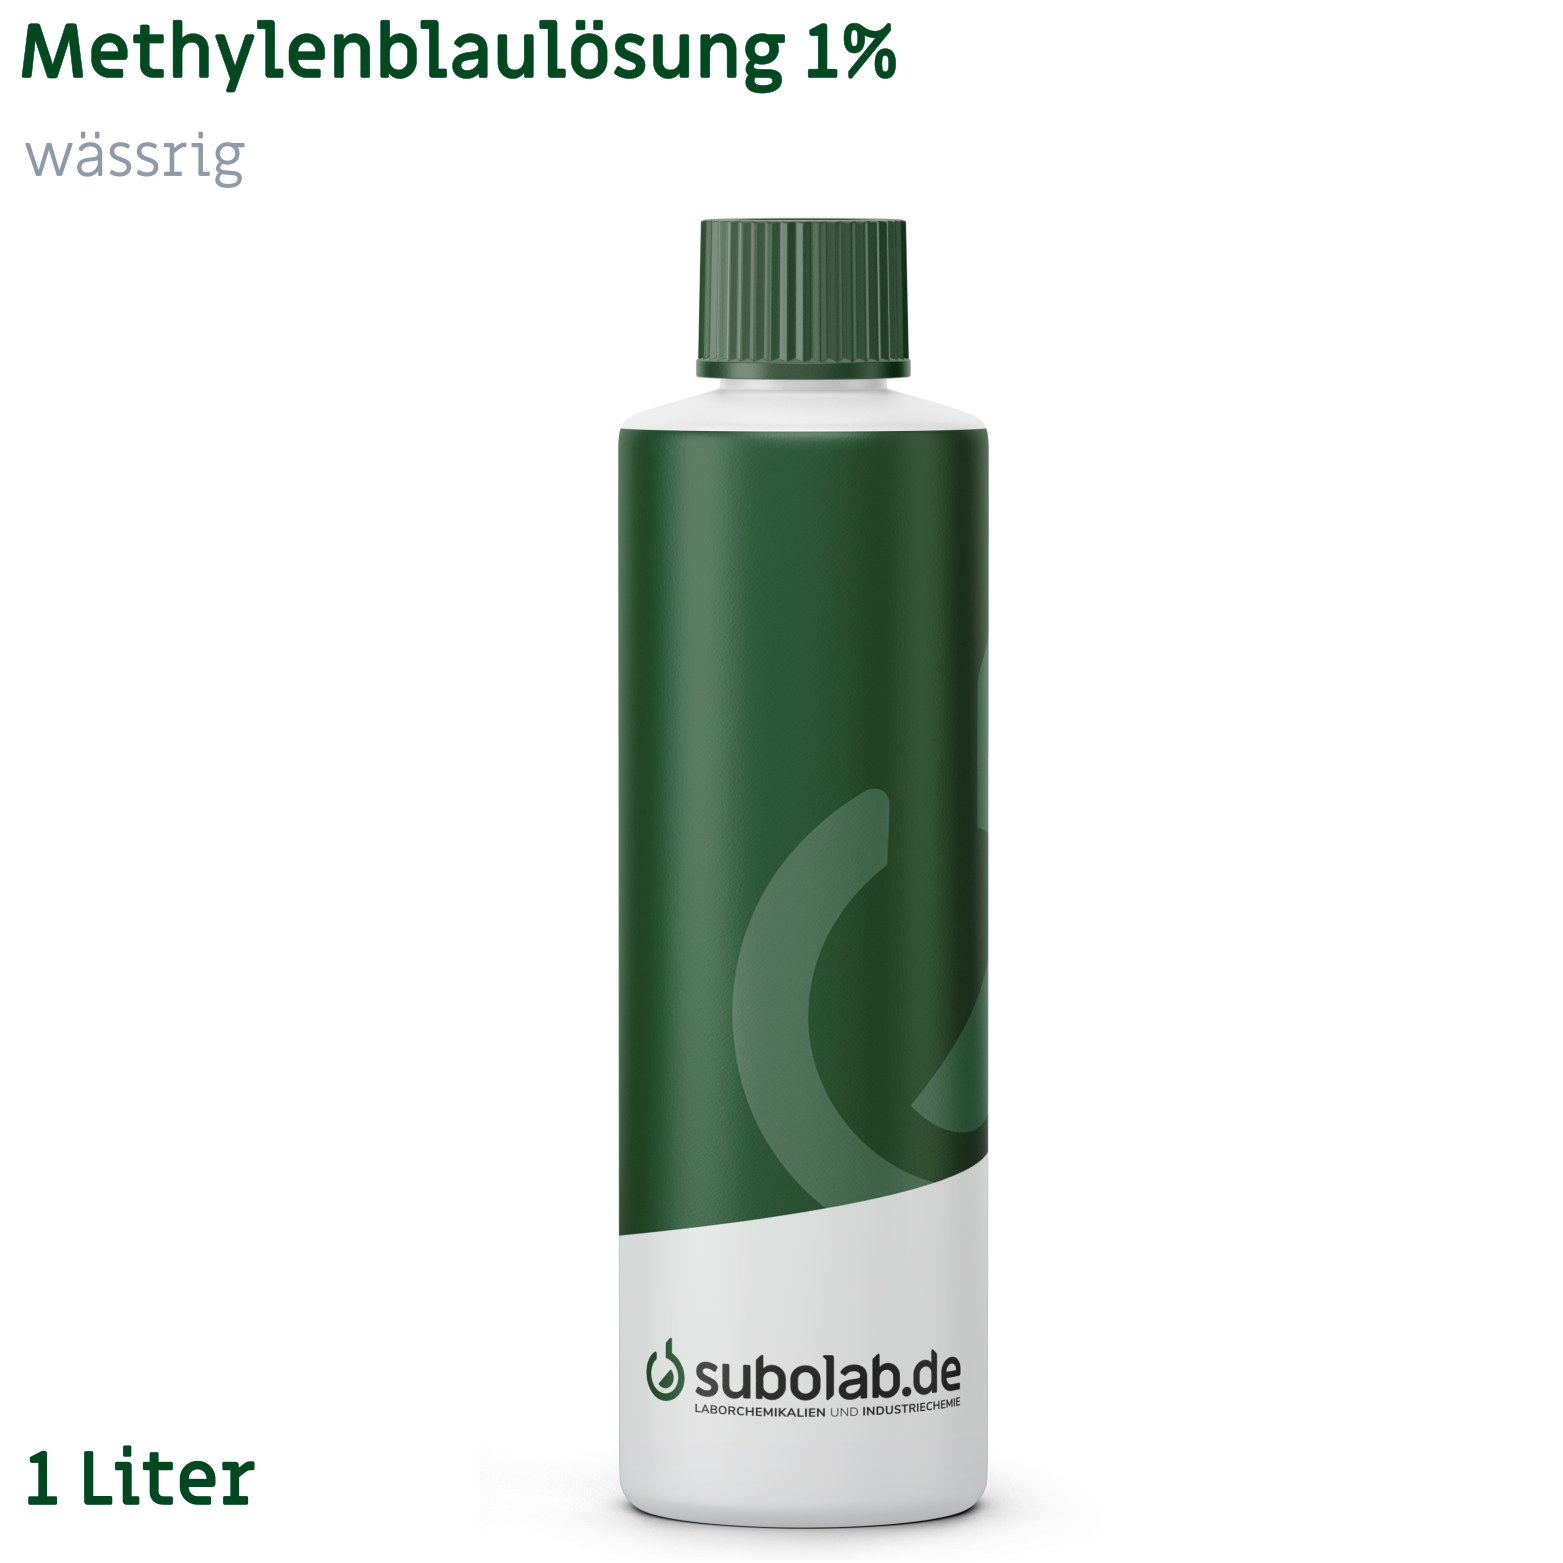 Bild von Methylenblaulösung 1% wässrig (1 Liter)